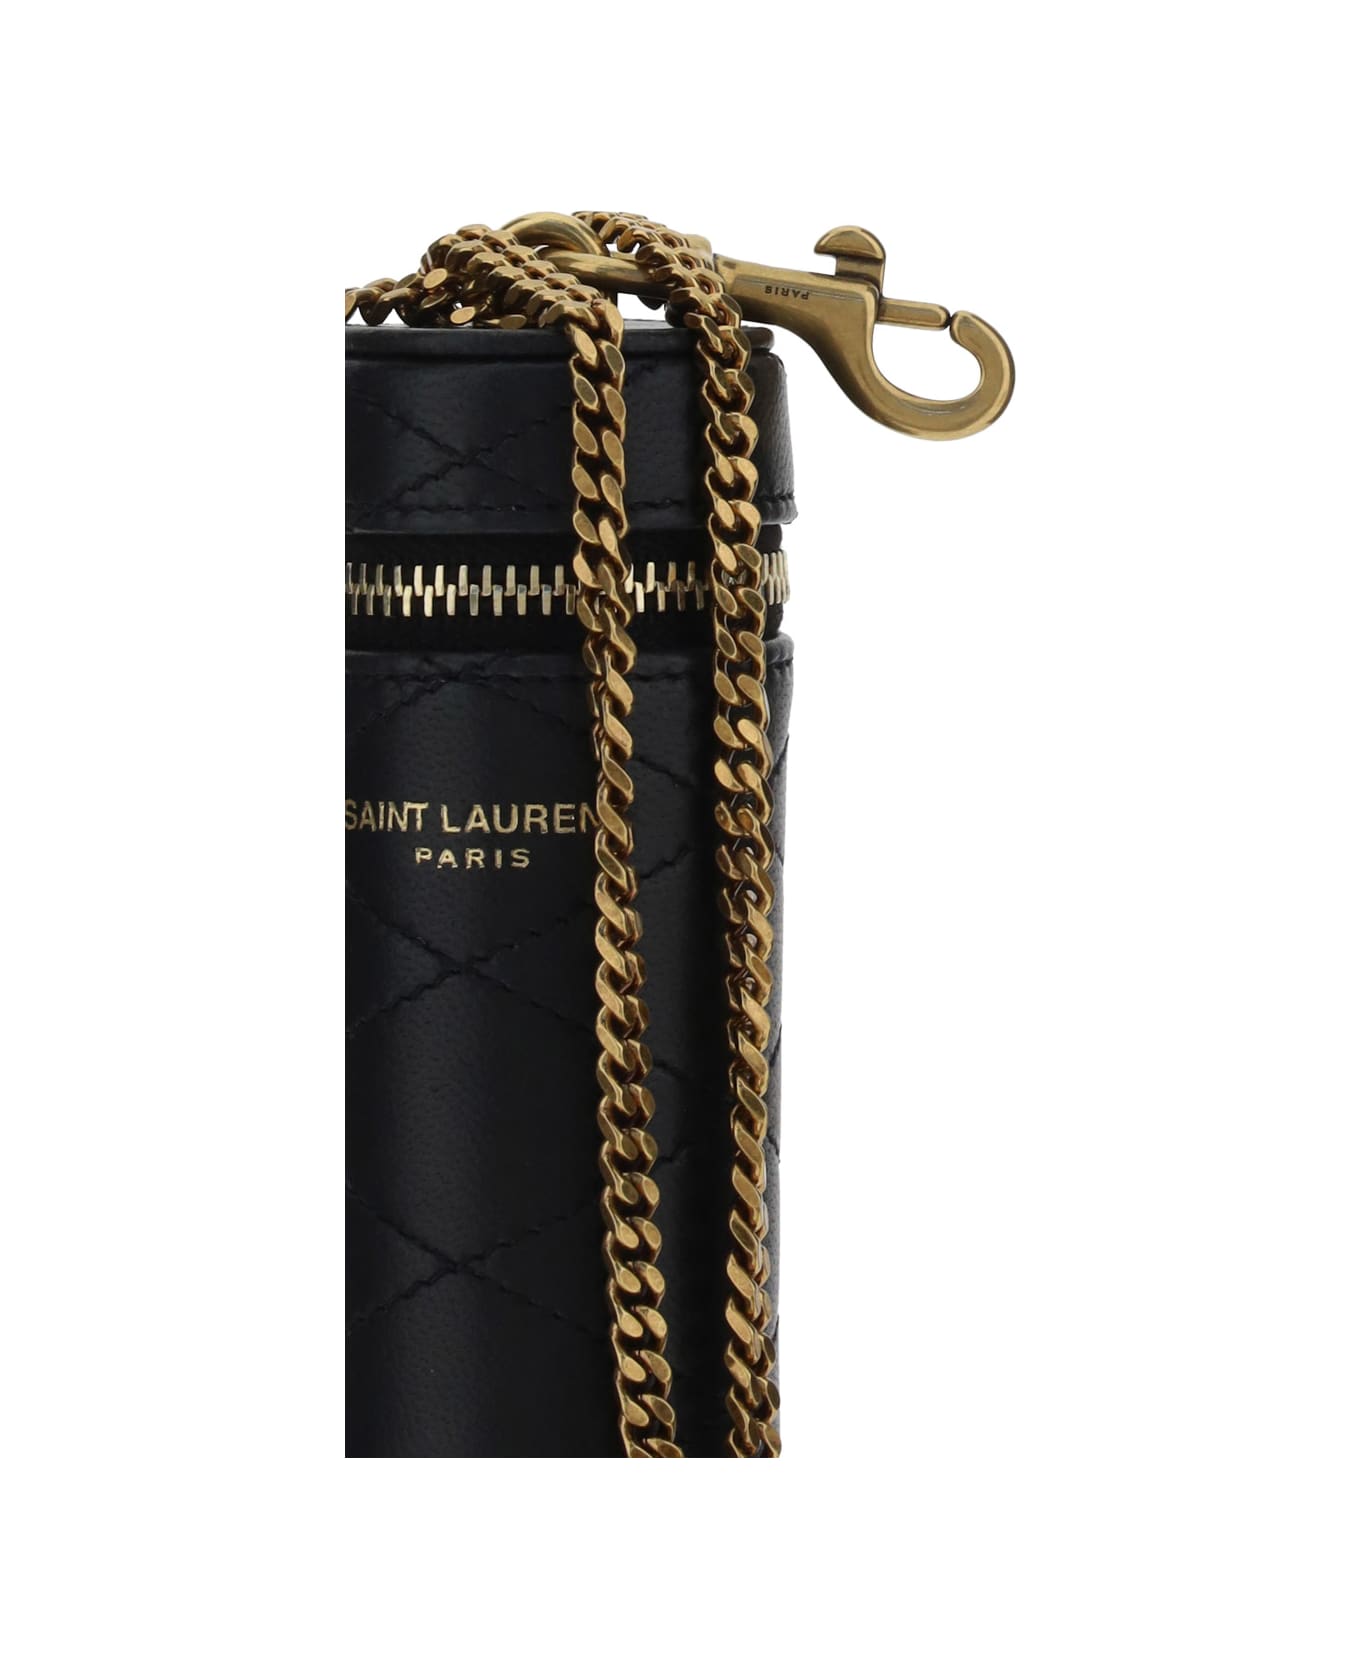 Saint Laurent Lipstick Case - Nero